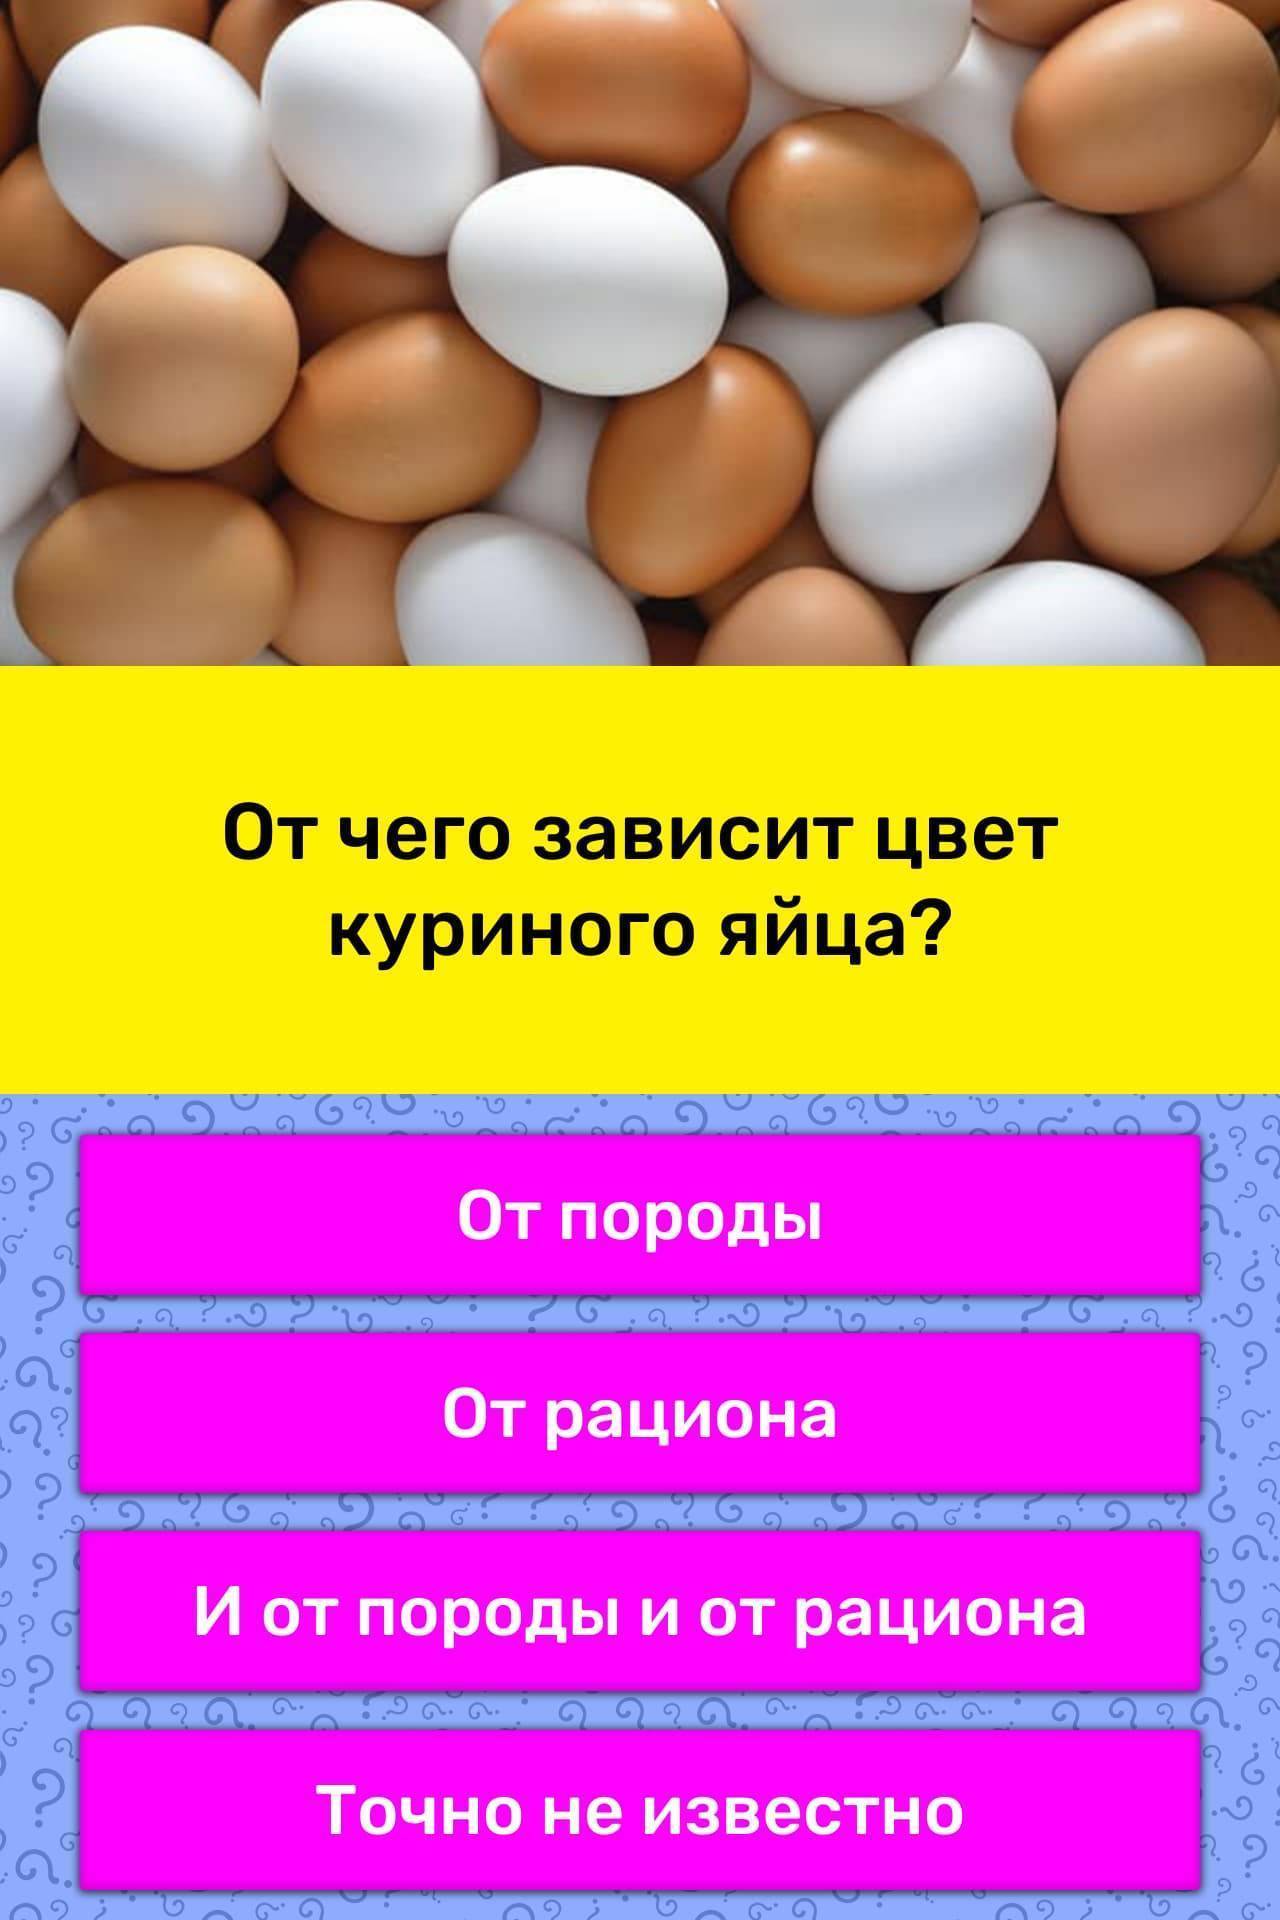 Почему яйца желтые: цвет желтка, белка и скорлупы — русский завтрак